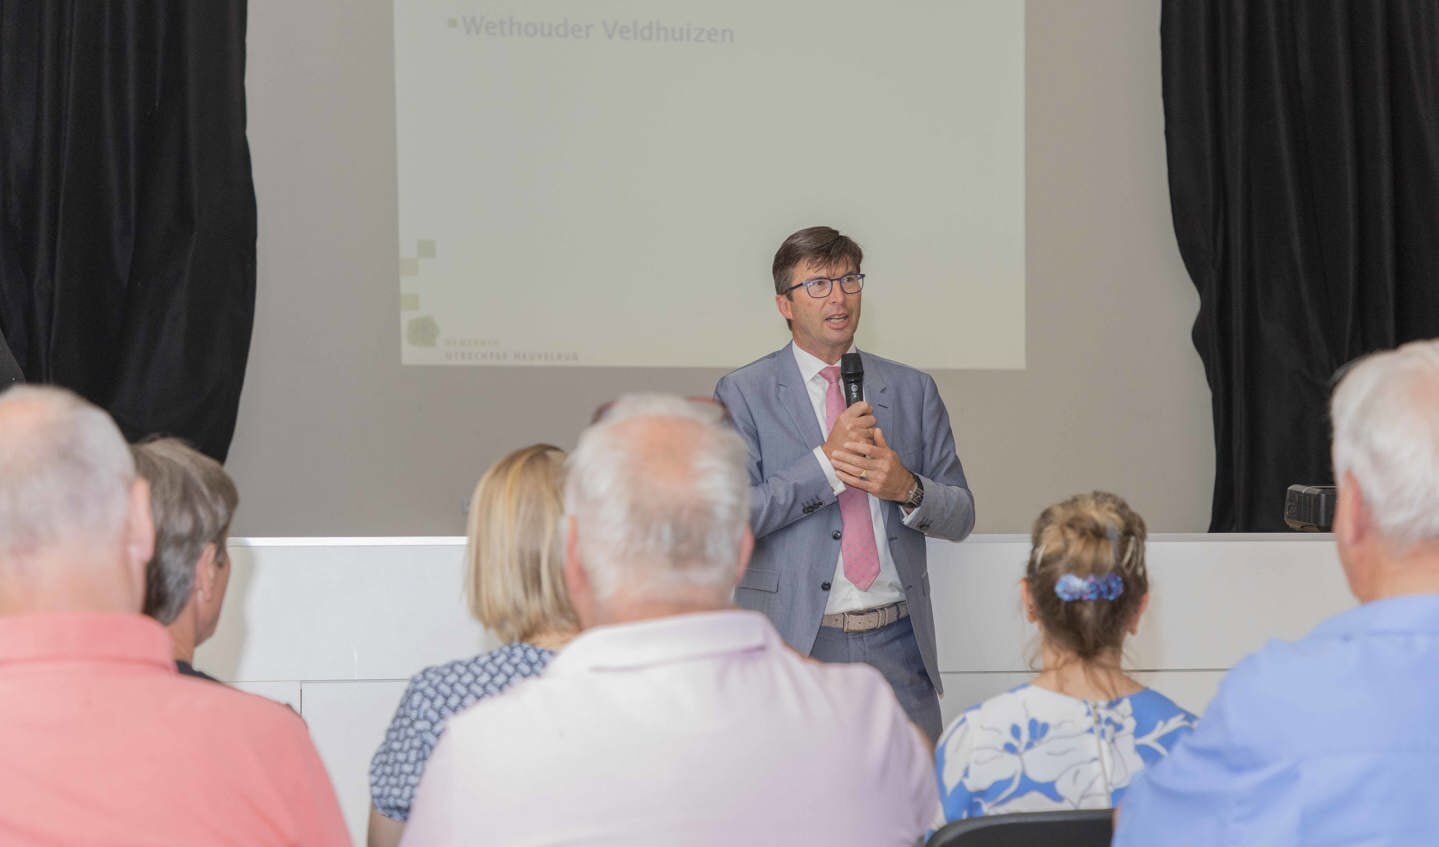 Wethouder Veldhuizen over project Amerongen Regenwaterproof